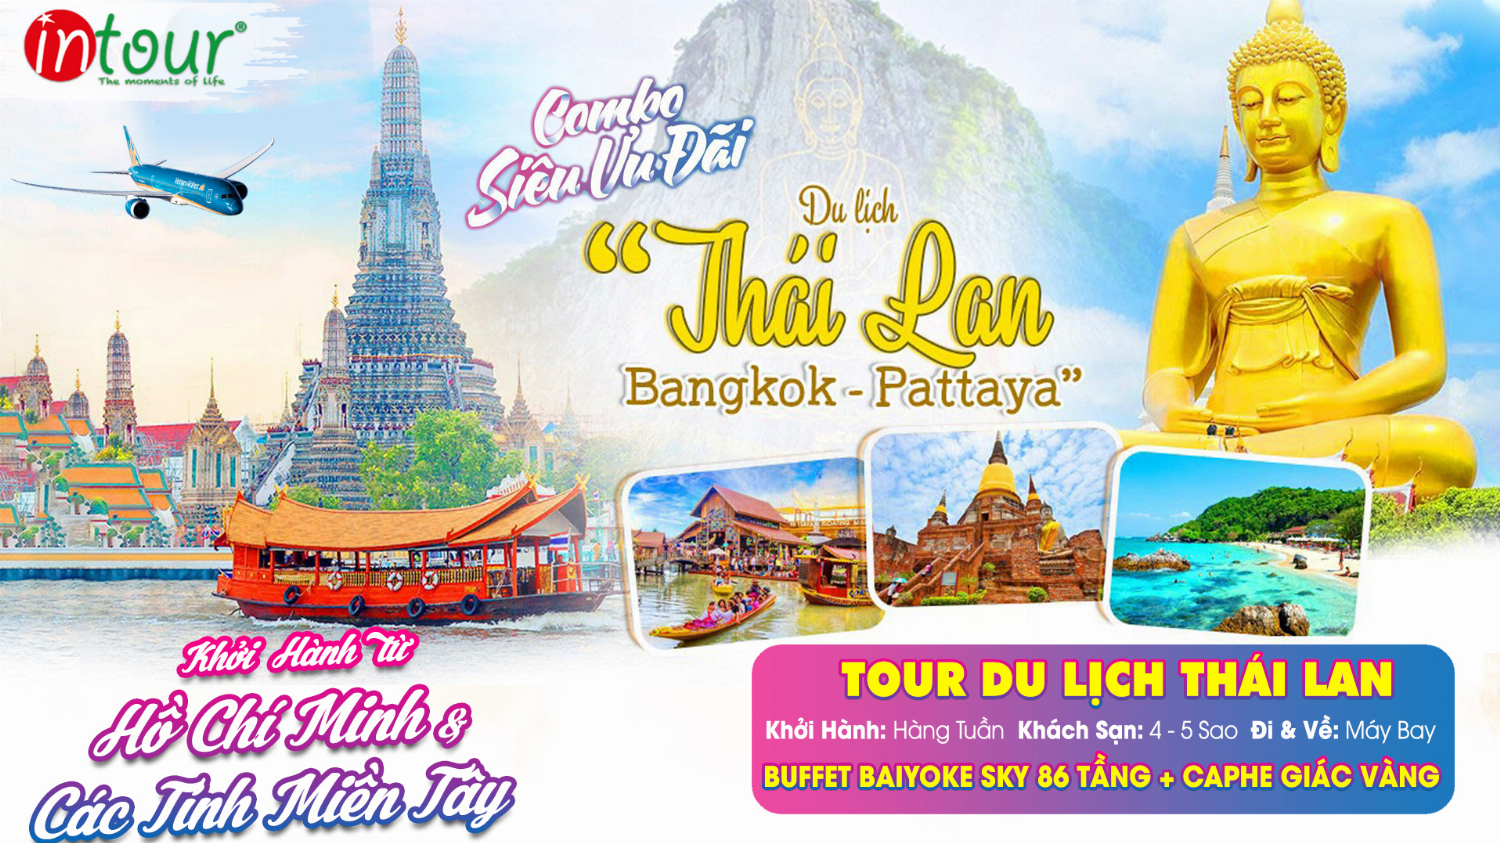 Chùm Tour Du Lịch Thái Lan